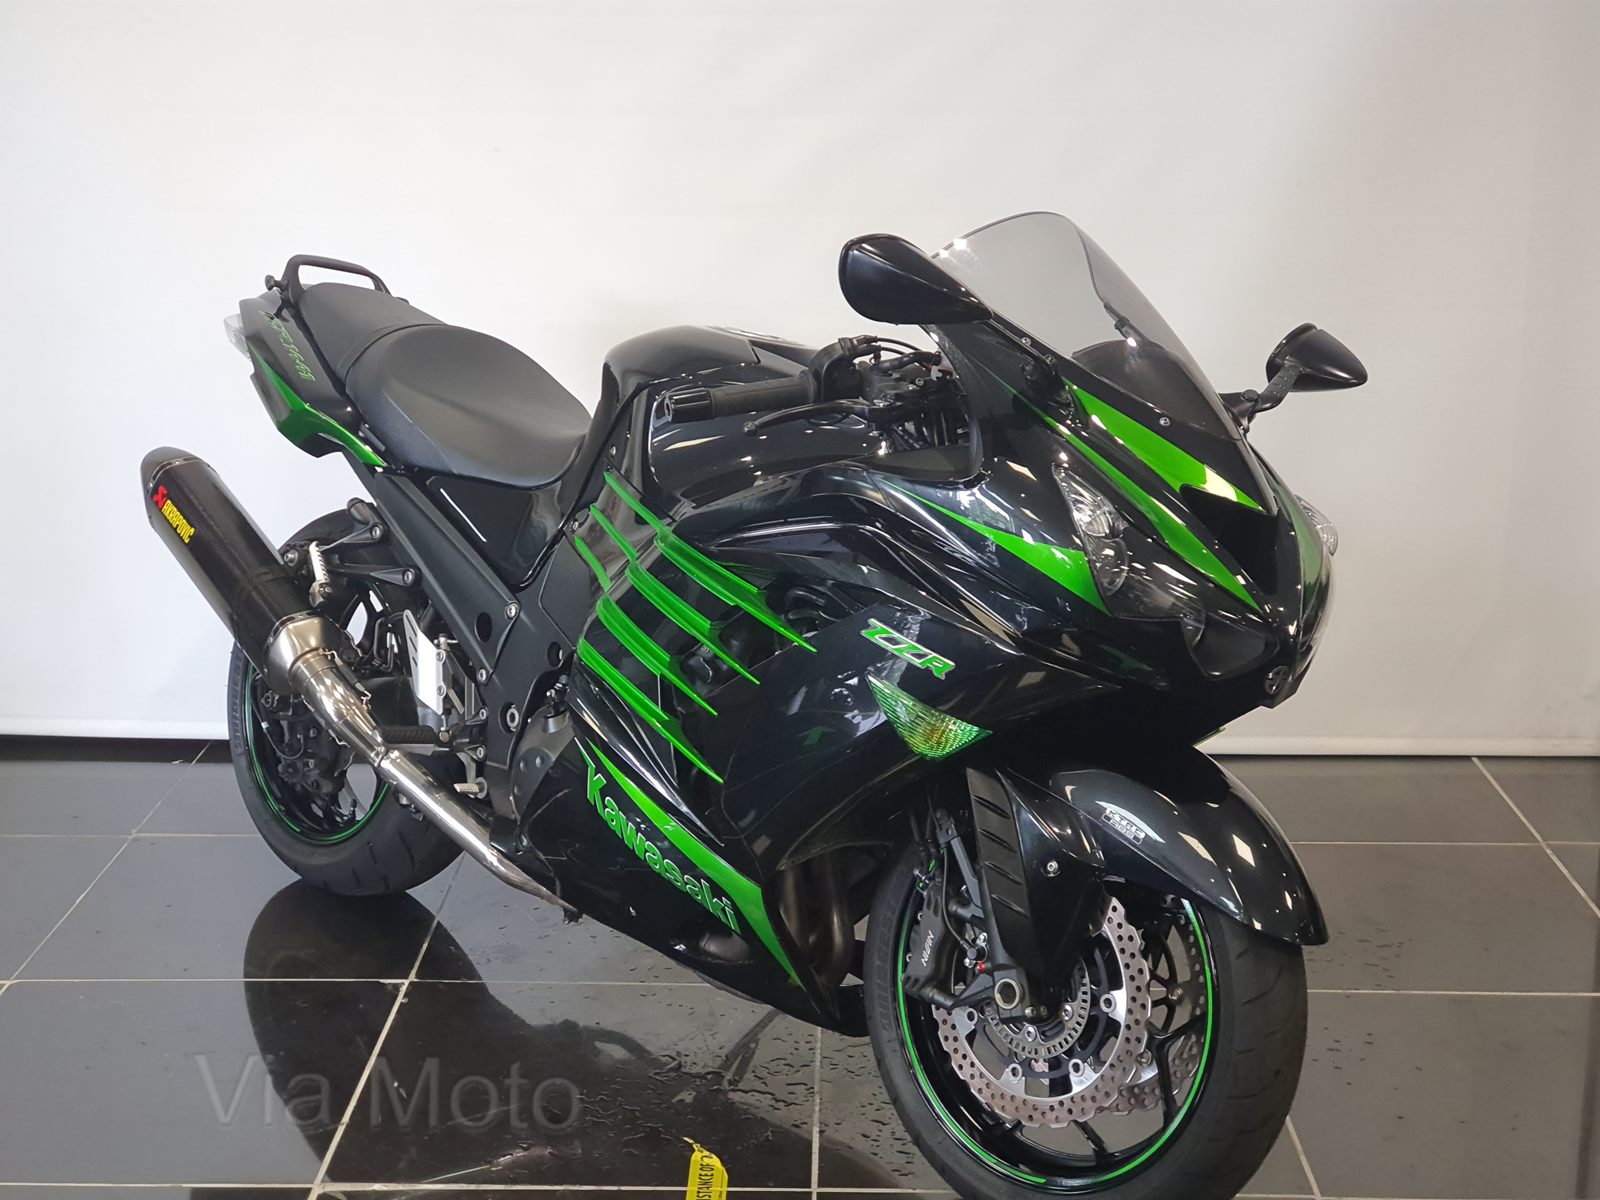 Zx1400 For Sale In South Africa Via Moto Kawasaki Kawasaki